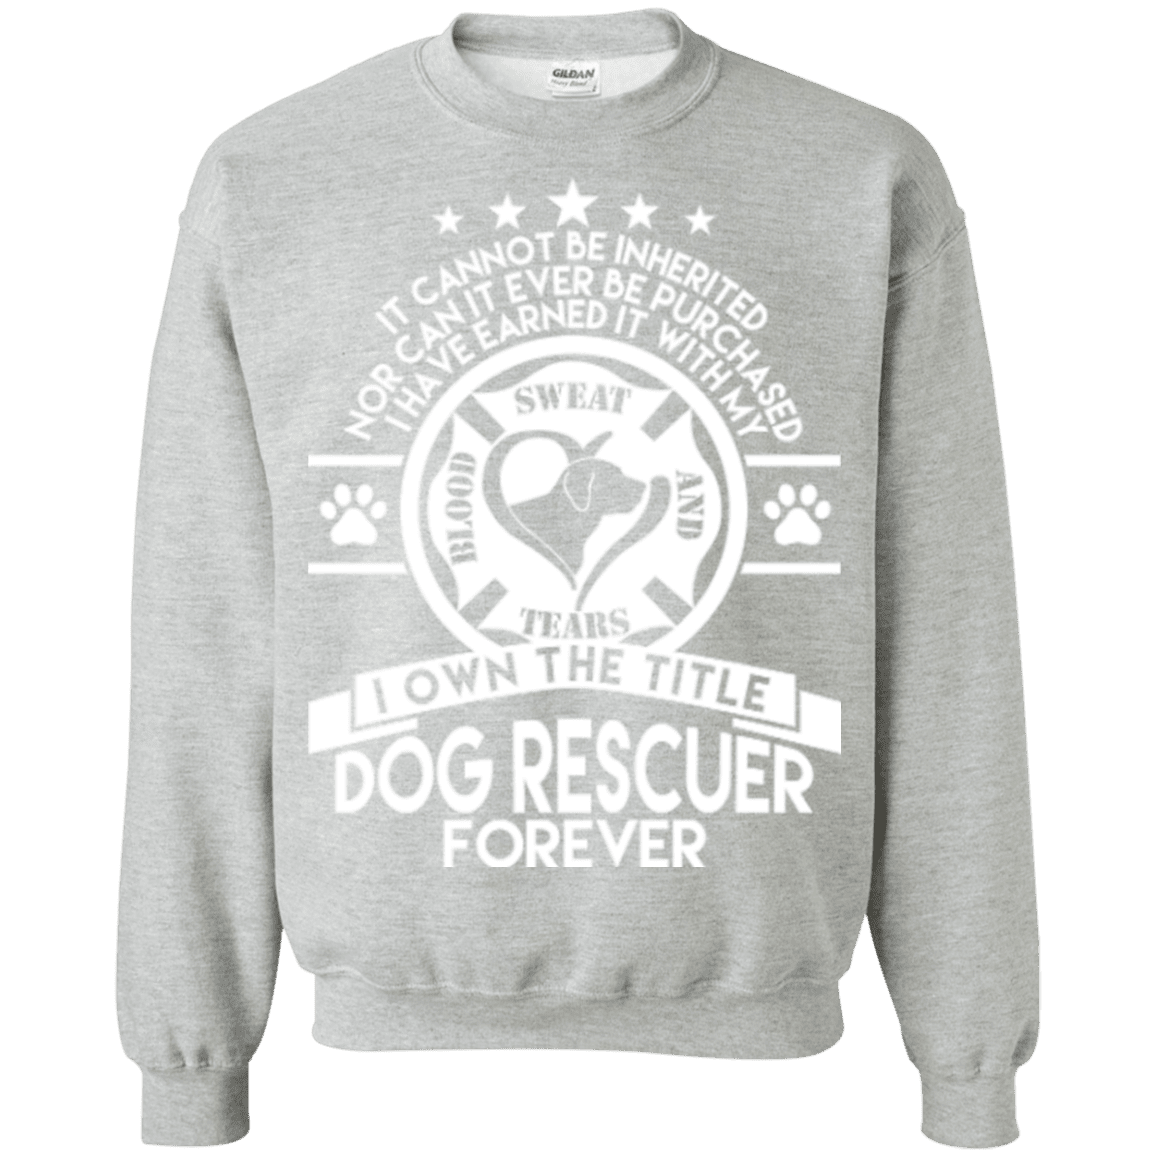 Dog Rescuer Forever - Sweatshirt.